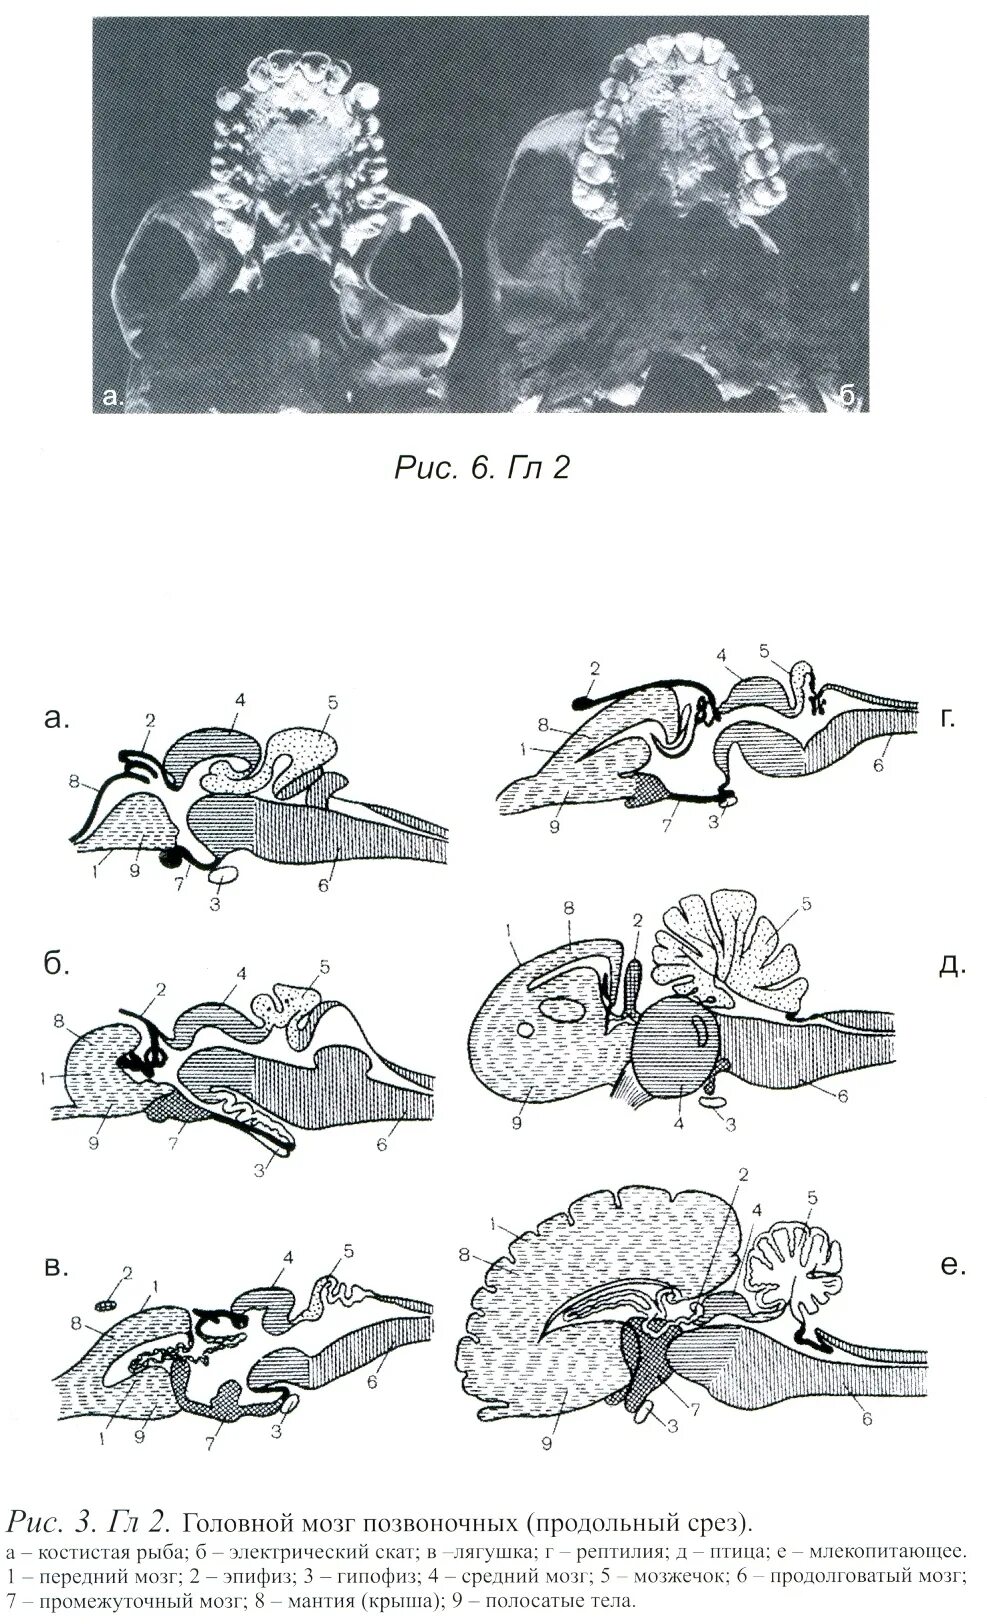 Эволюция мозга у позвоночных животных. Схема развития головного мозга позвоночных. Эволюция головного мозга позвоночных таблица. Эволюция головного мозга позвоночных схема. Схема развития головного мозга позвоночных животных.